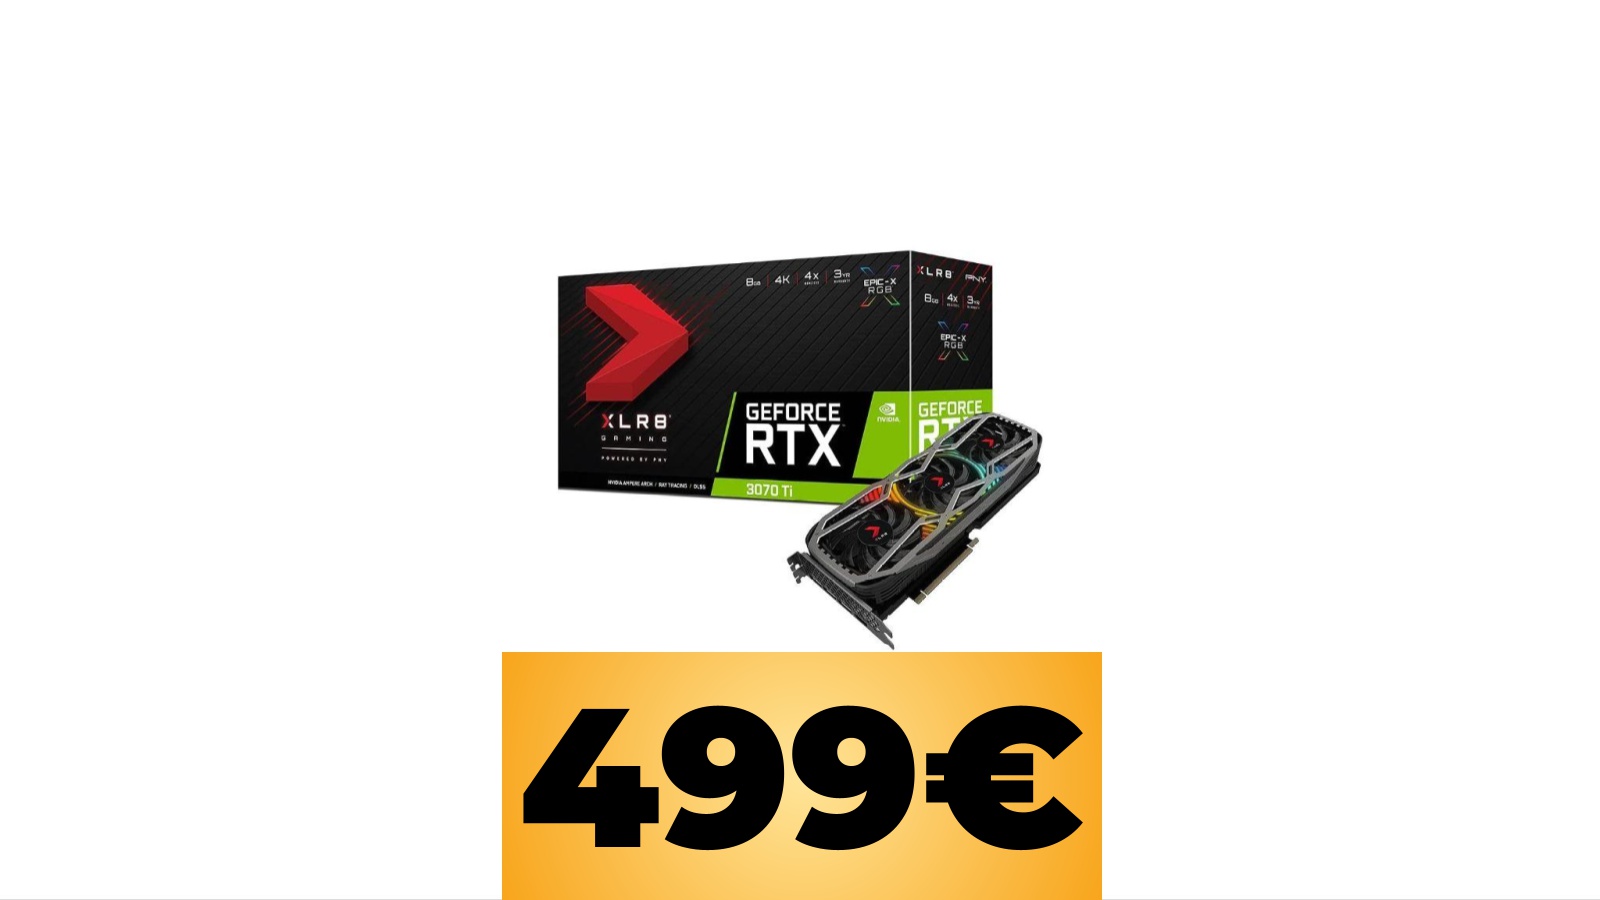 PNY NVIDIA GeForce RTX 3070 Ti 8GB GDDR6X al prezzo minimo storico tramite Amazon Italia